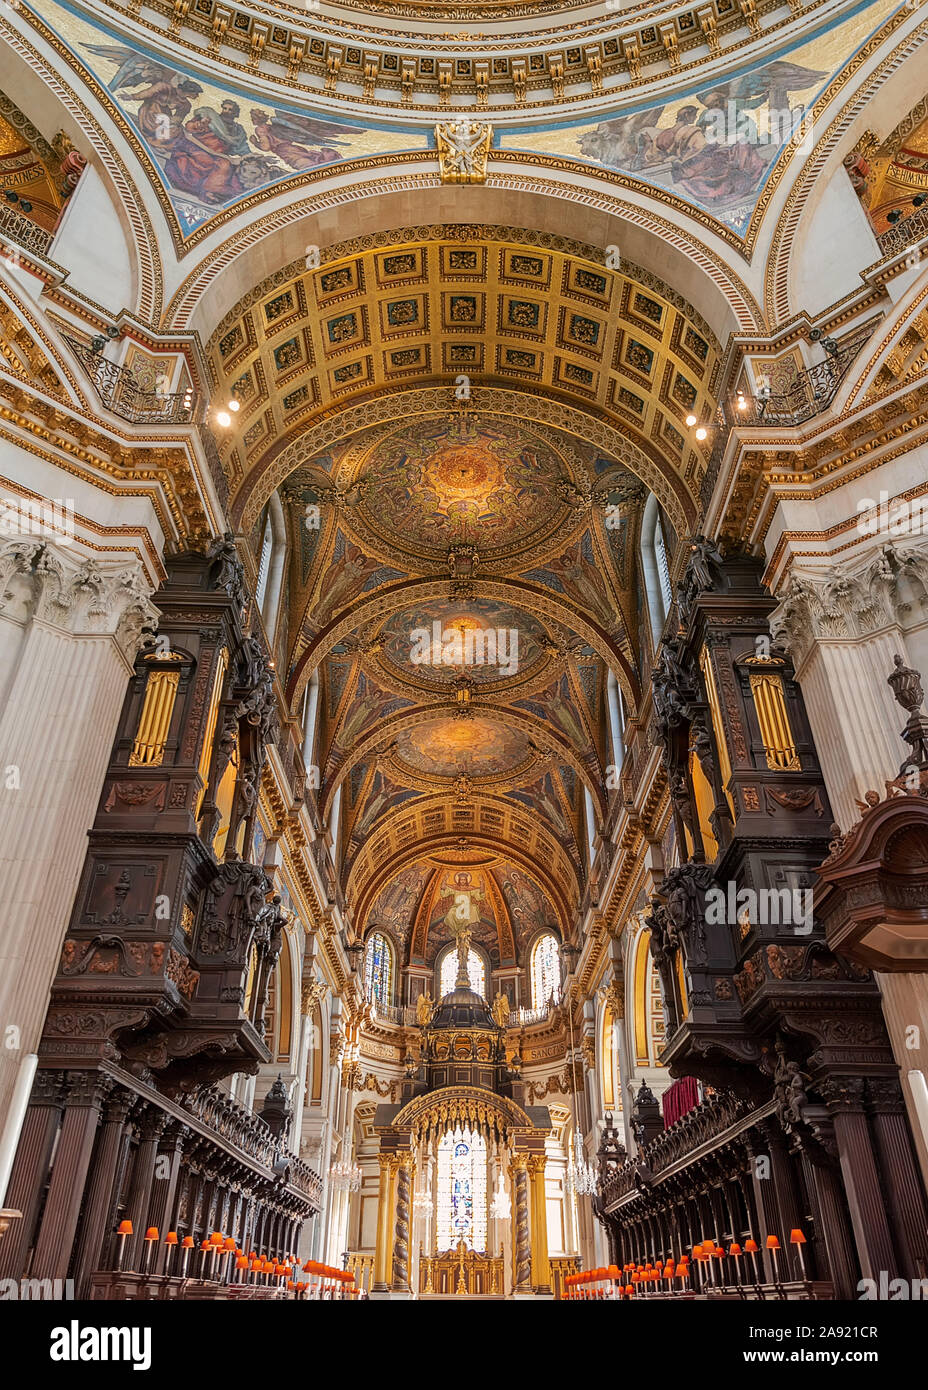 Cattedrale di St Paul. Splendida all'interno del San Paolo catherdal. Incredibile, altare, affreschi e la cupola Foto Stock